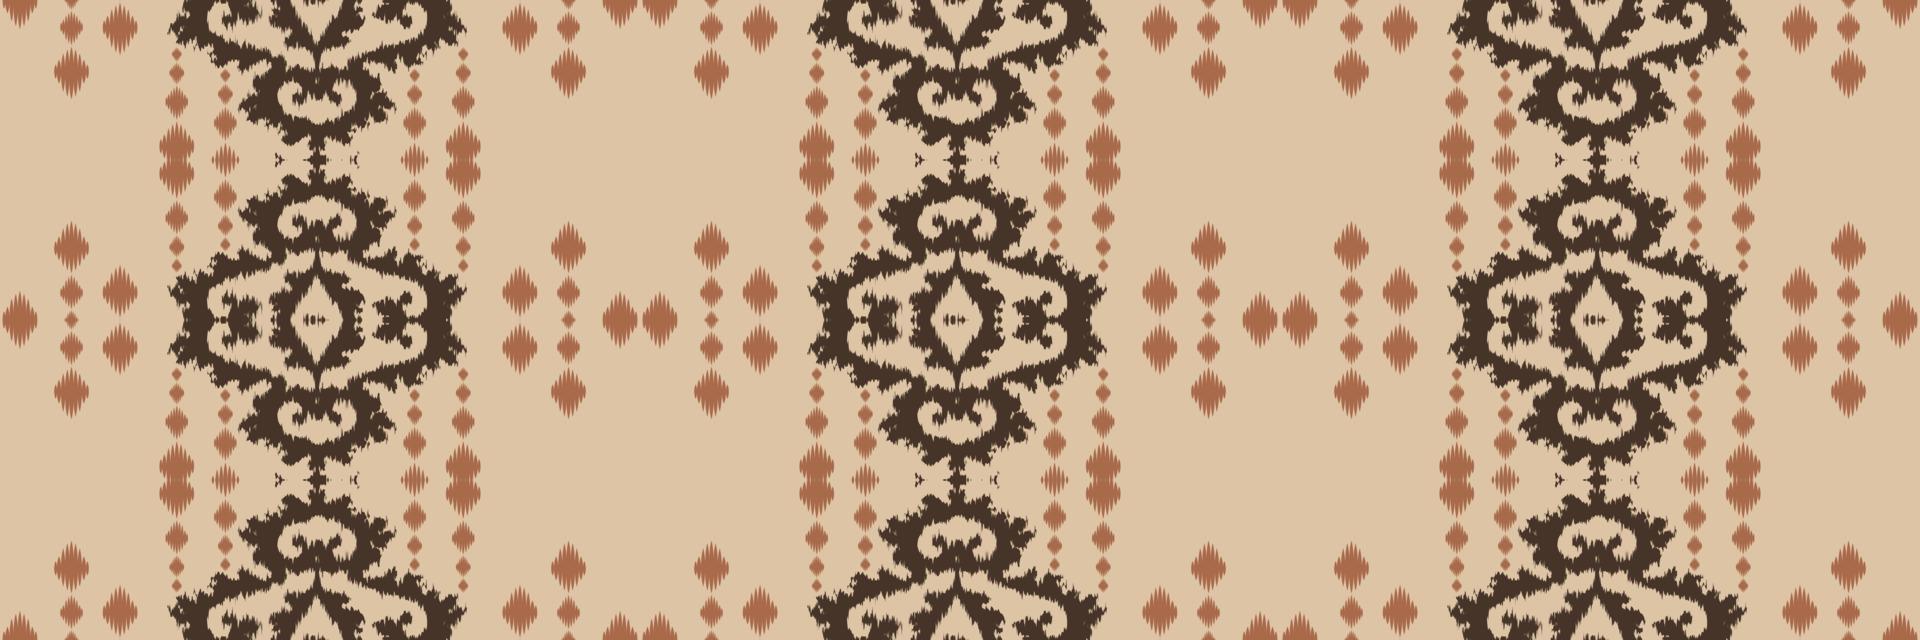 batik textil étnico ikat flores de patrones sin fisuras diseño de vector digital para imprimir saree kurti borneo borde de tela símbolos de pincel muestras de algodón